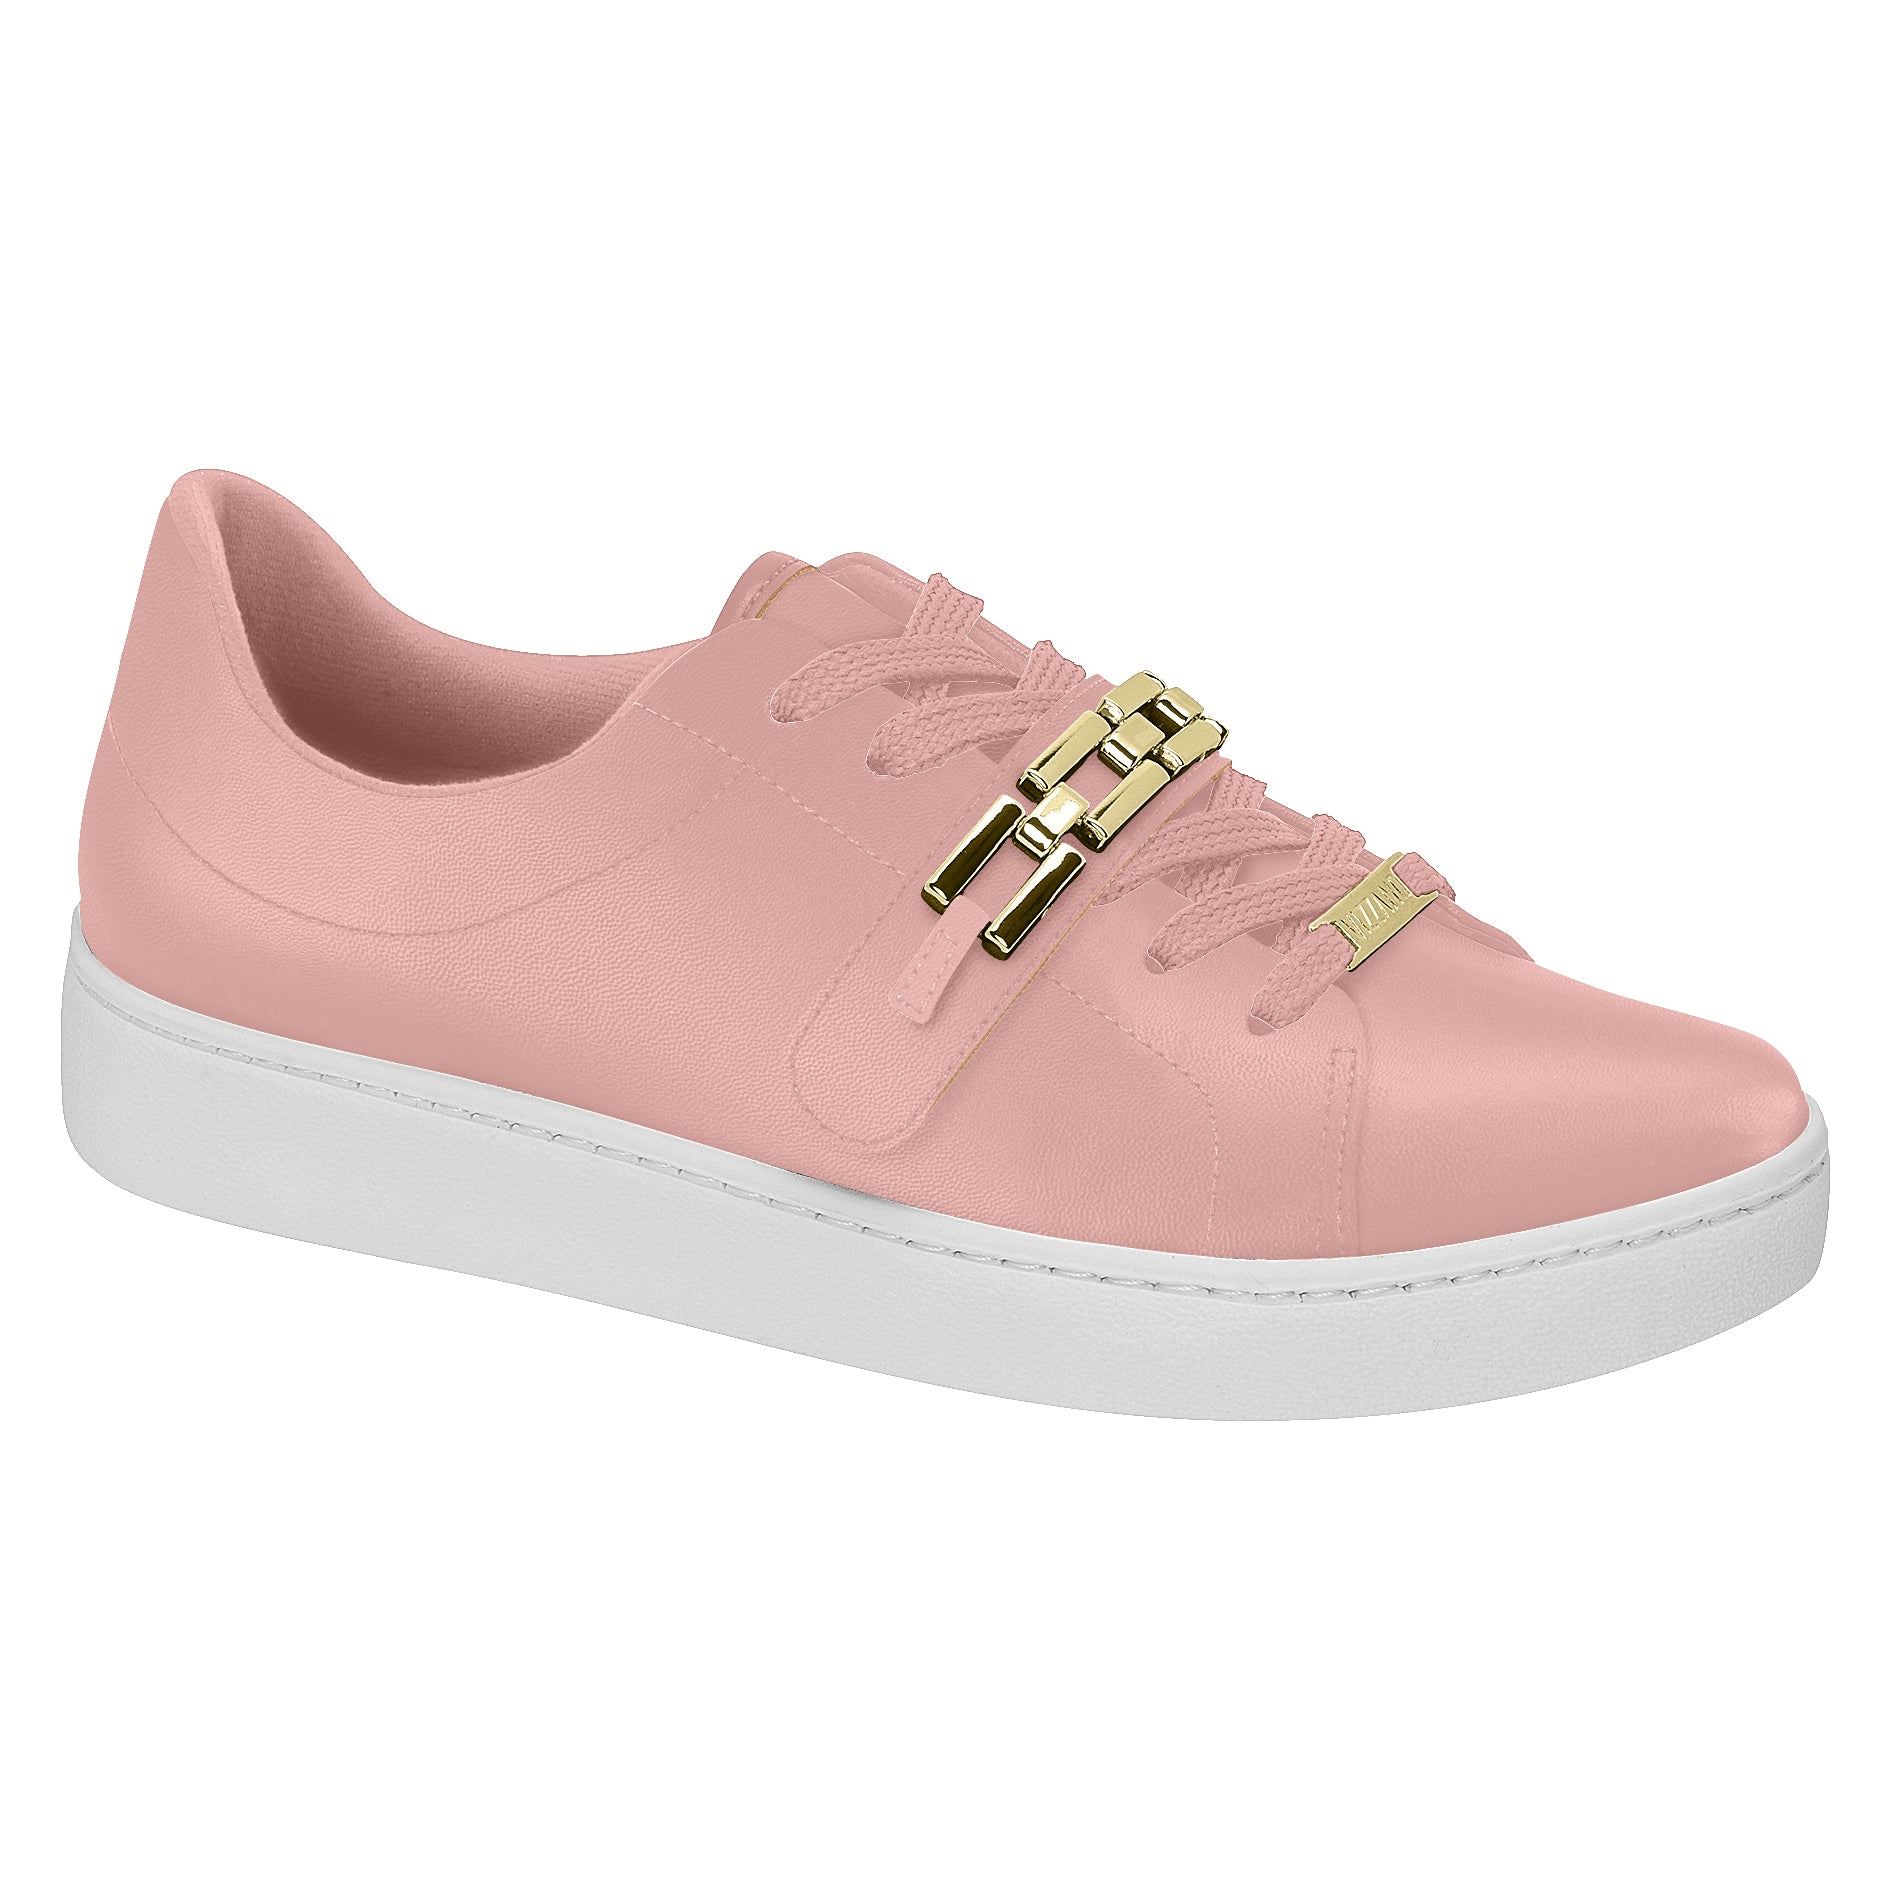 Vizzano 1214-1011 Gold Chain Sneaker in Pink Napa